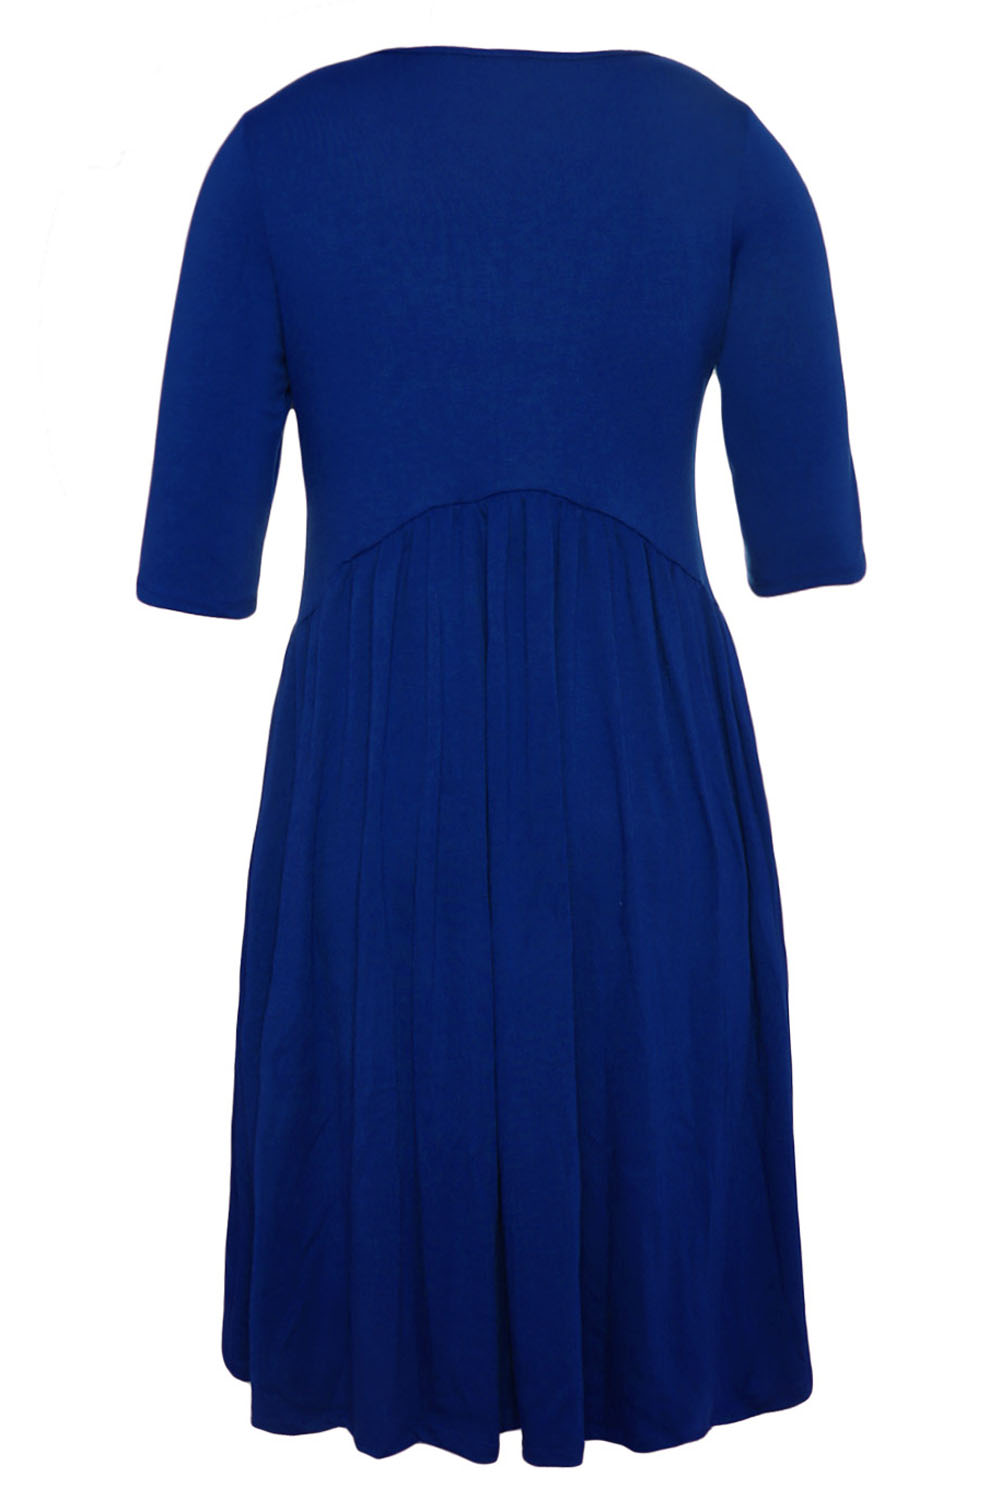 BY61653-5 Blue  Sleeve Draped Swing Dress